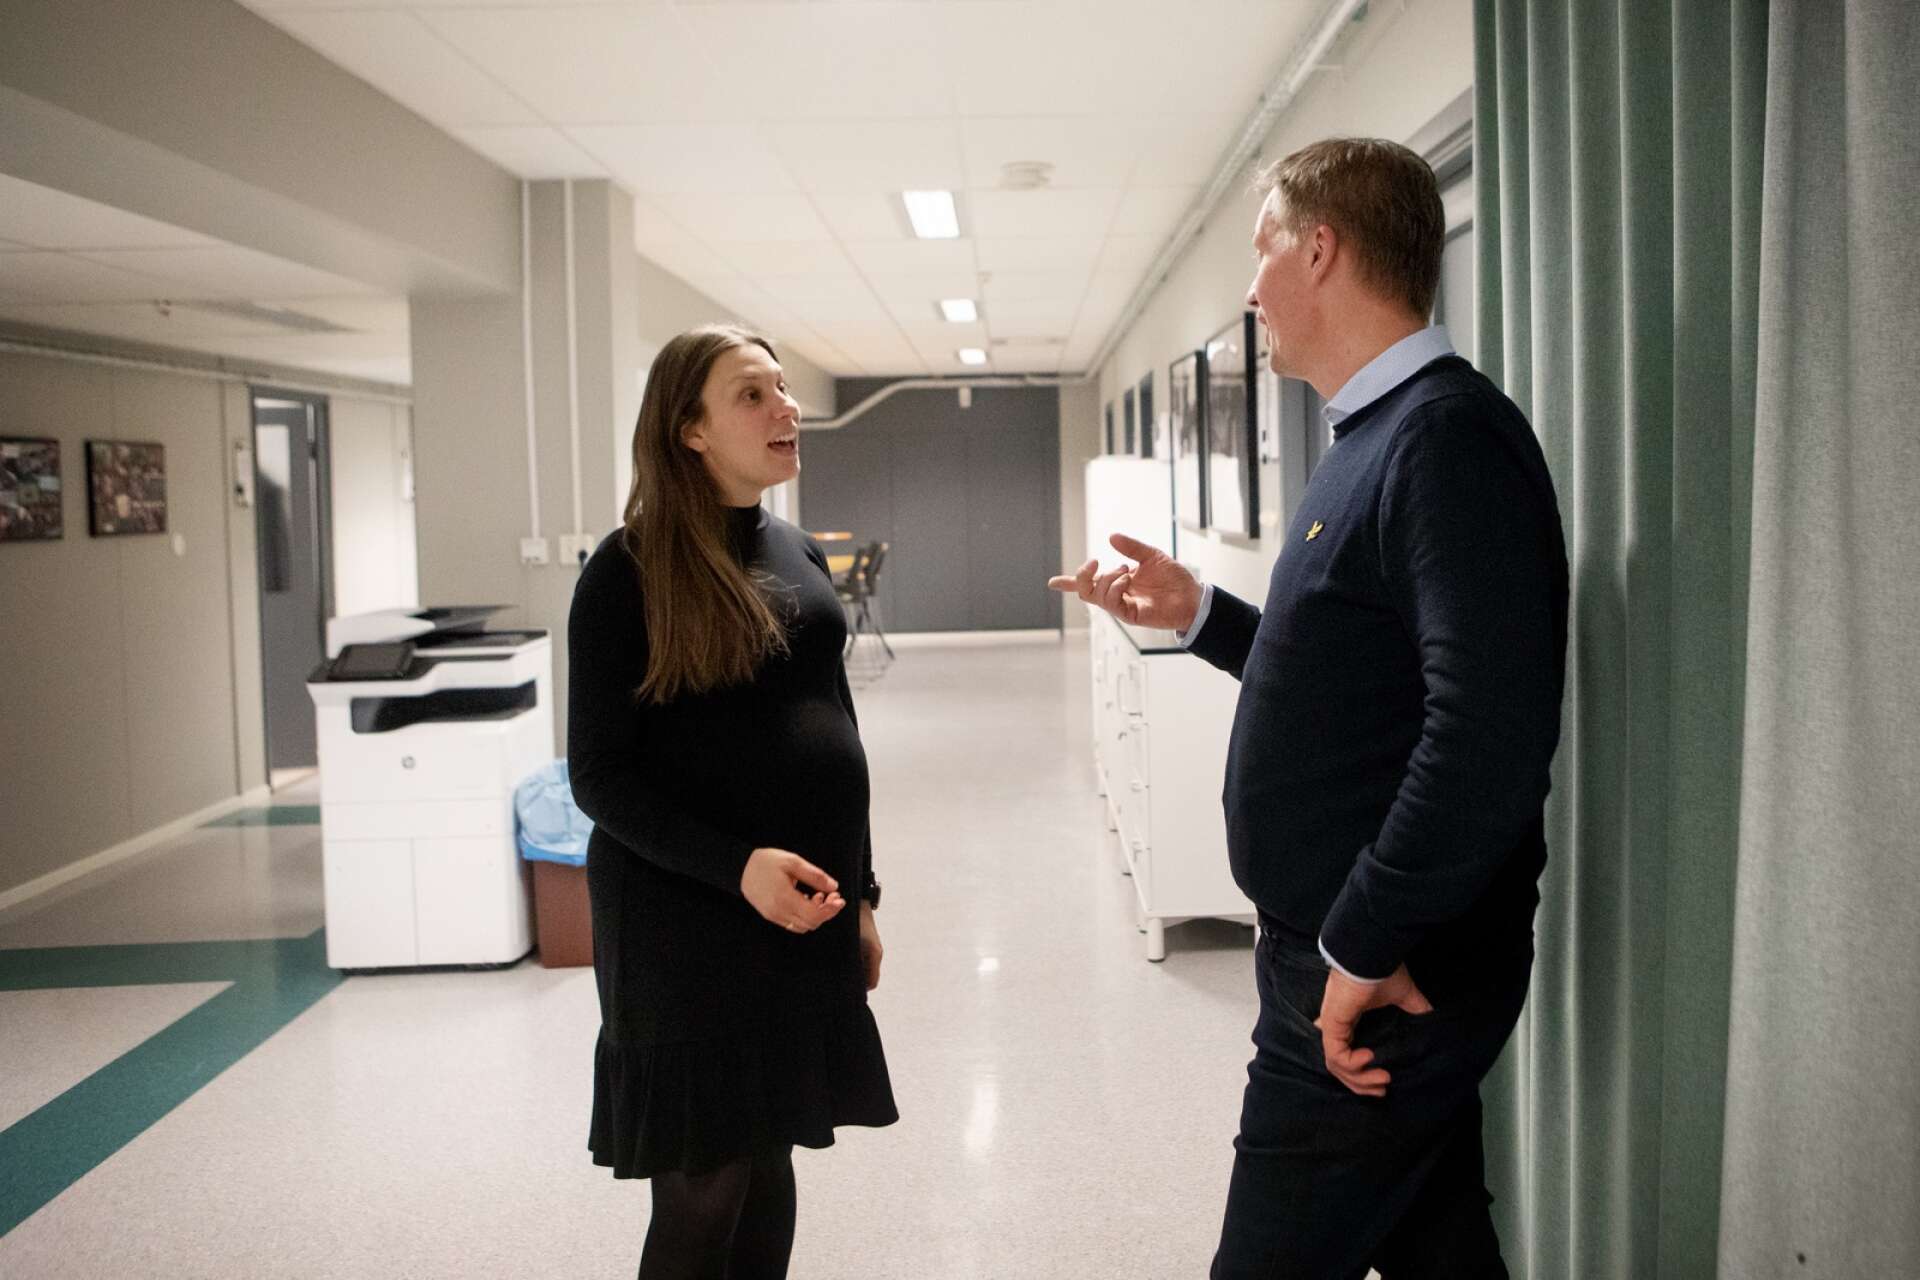 Emilia Gustafsson tillsammans med Rikard Olsson, som är sektionschef på projektkontoret där hon arbetar. Han ser gärna att det kommer fler tjejer till avdelningen. ”Det blir en annan kultur och inte så grabbigt om det är mer blandat”, säger han.